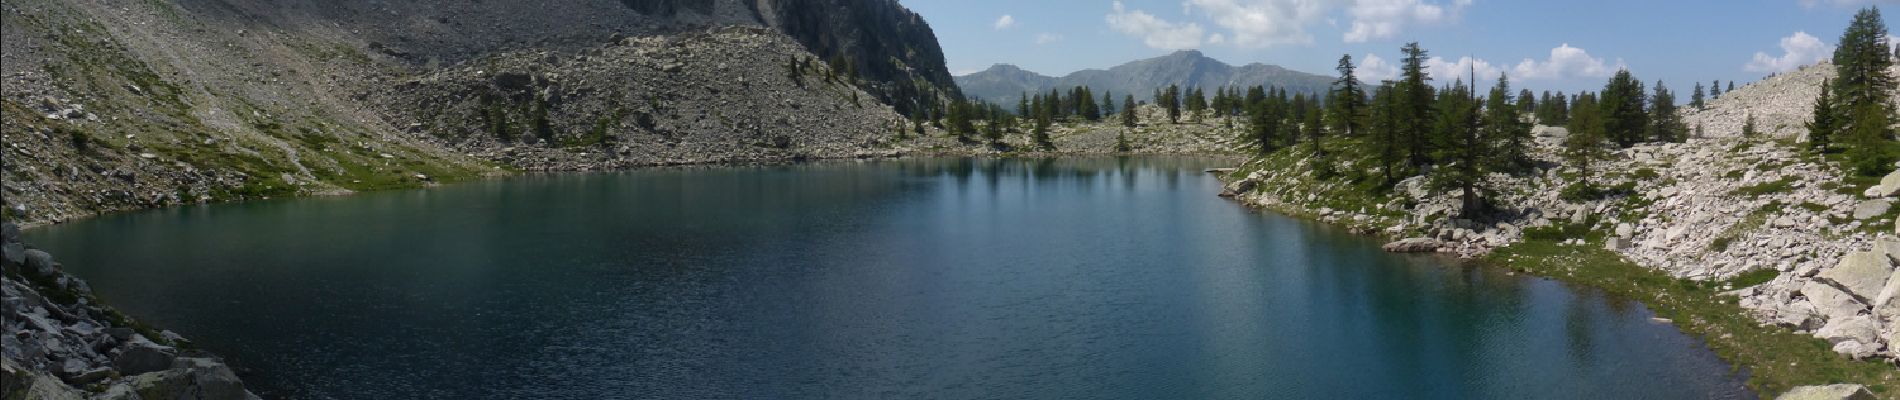 Randonnée Marche Valdeblore - Lac Tavels depuis Isola 2000 - Photo